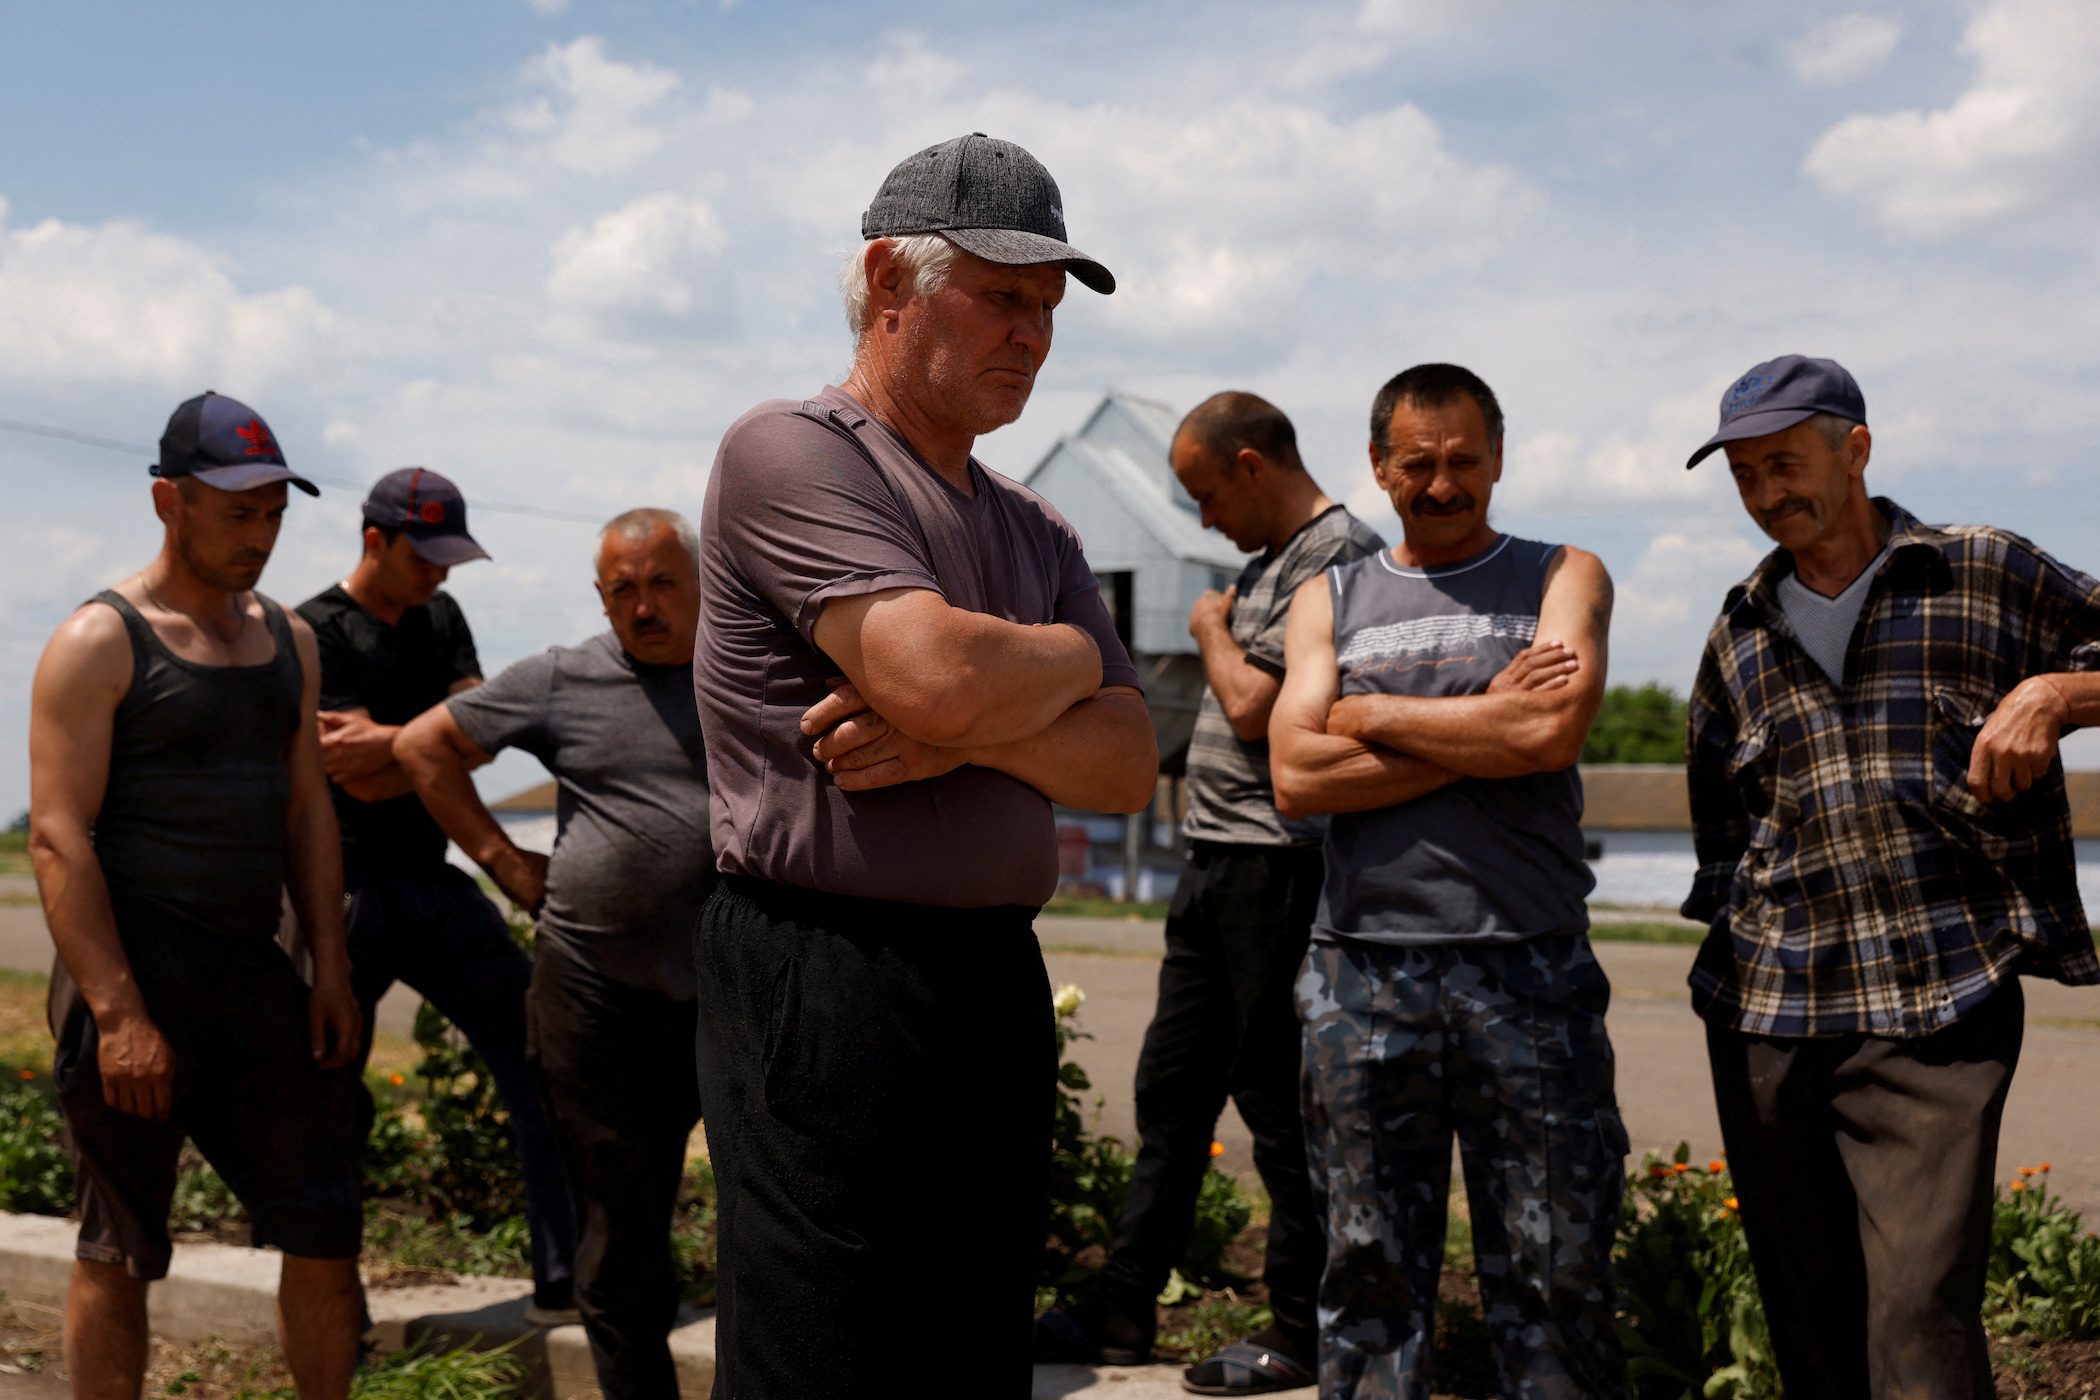 Ukraine’s besieged farmers fear wartime harvest ‘hell’